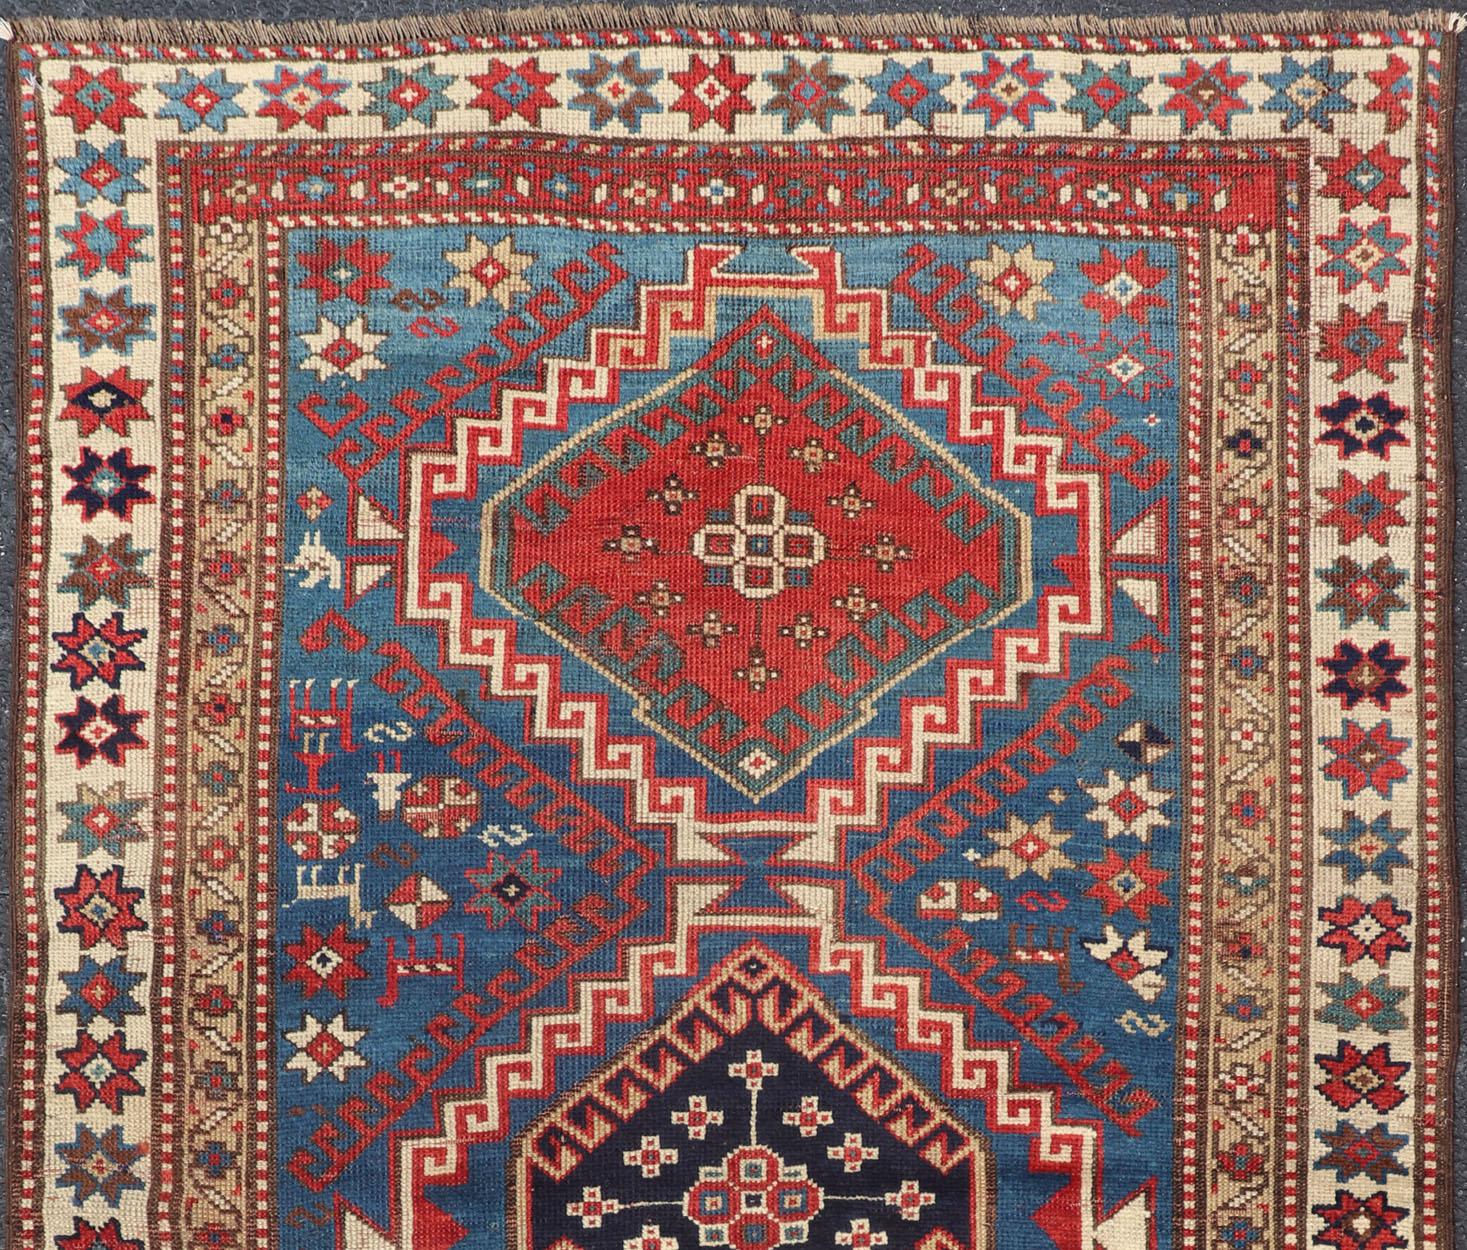 Tribal geometric medallion design Kazak antique rug, antique Caucasian from Caucasus Region with a beautiful blue background in multi-colors. Keivan Woven Arts /  rug 19-0601, country of origin / type: Caucuses / Caucasian Kazak, circa